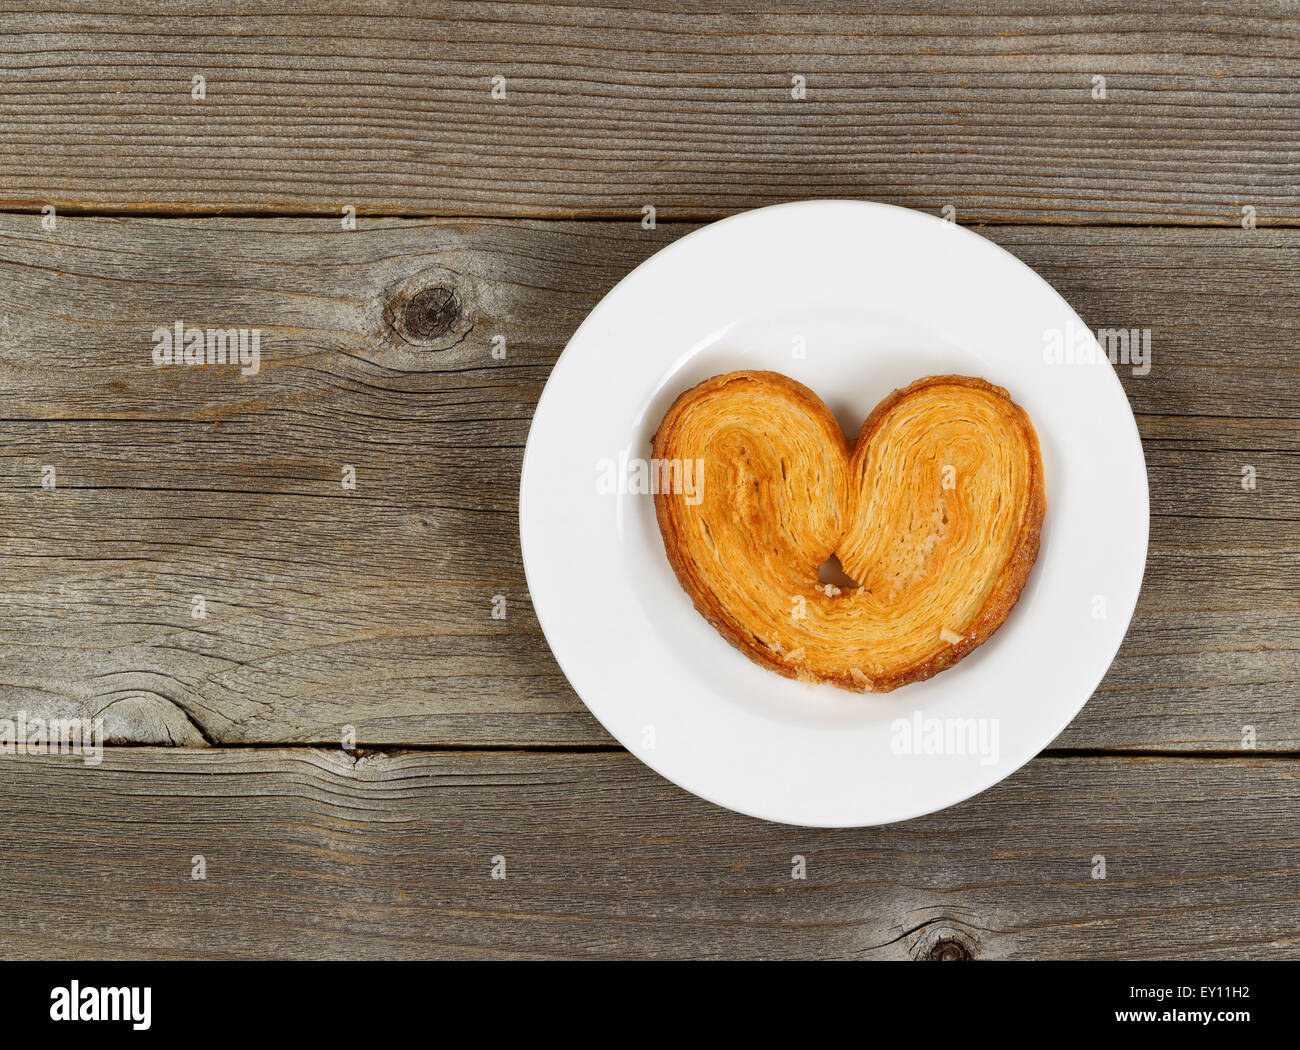 Unico a forma di cuore biscotto sulla piastra bianca con legno rustico in background. Foto Stock